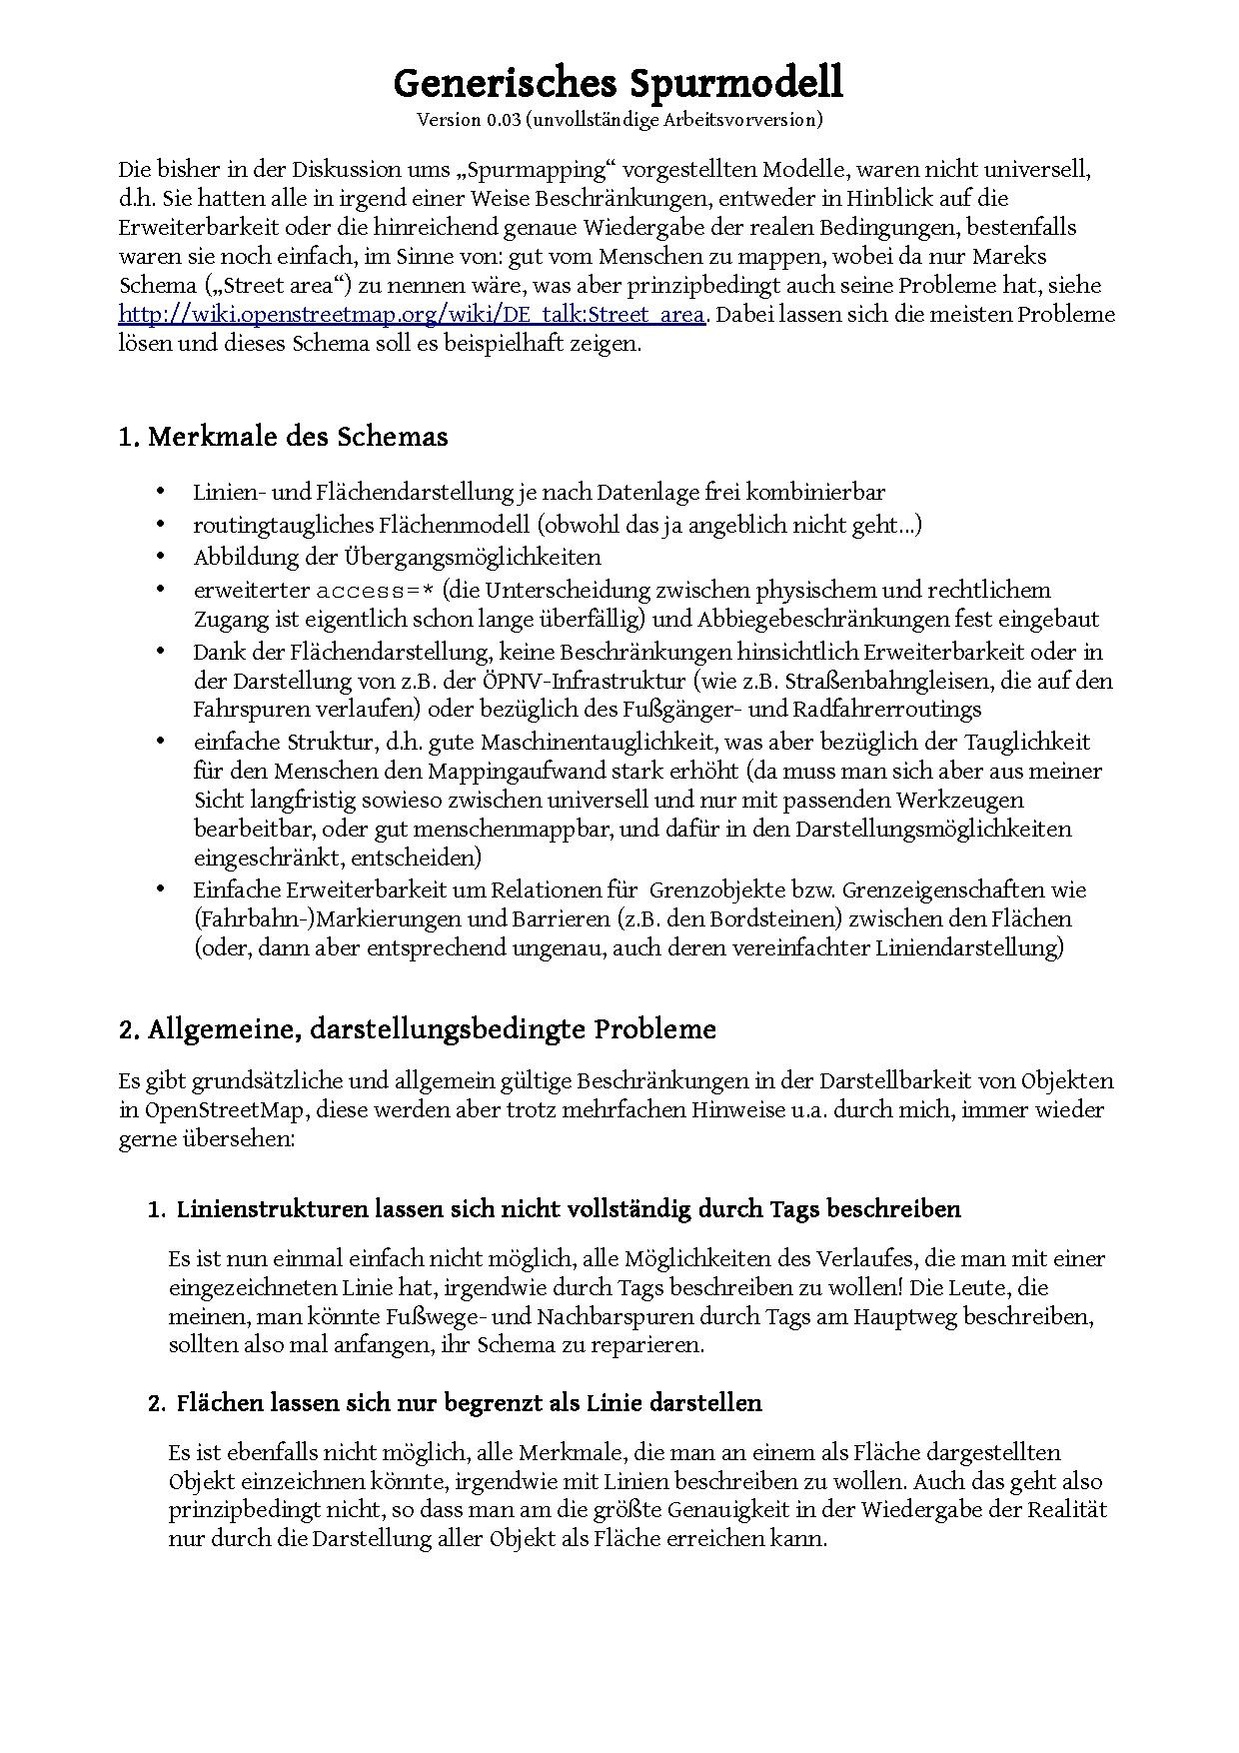 Generisches spurmodell.pdf